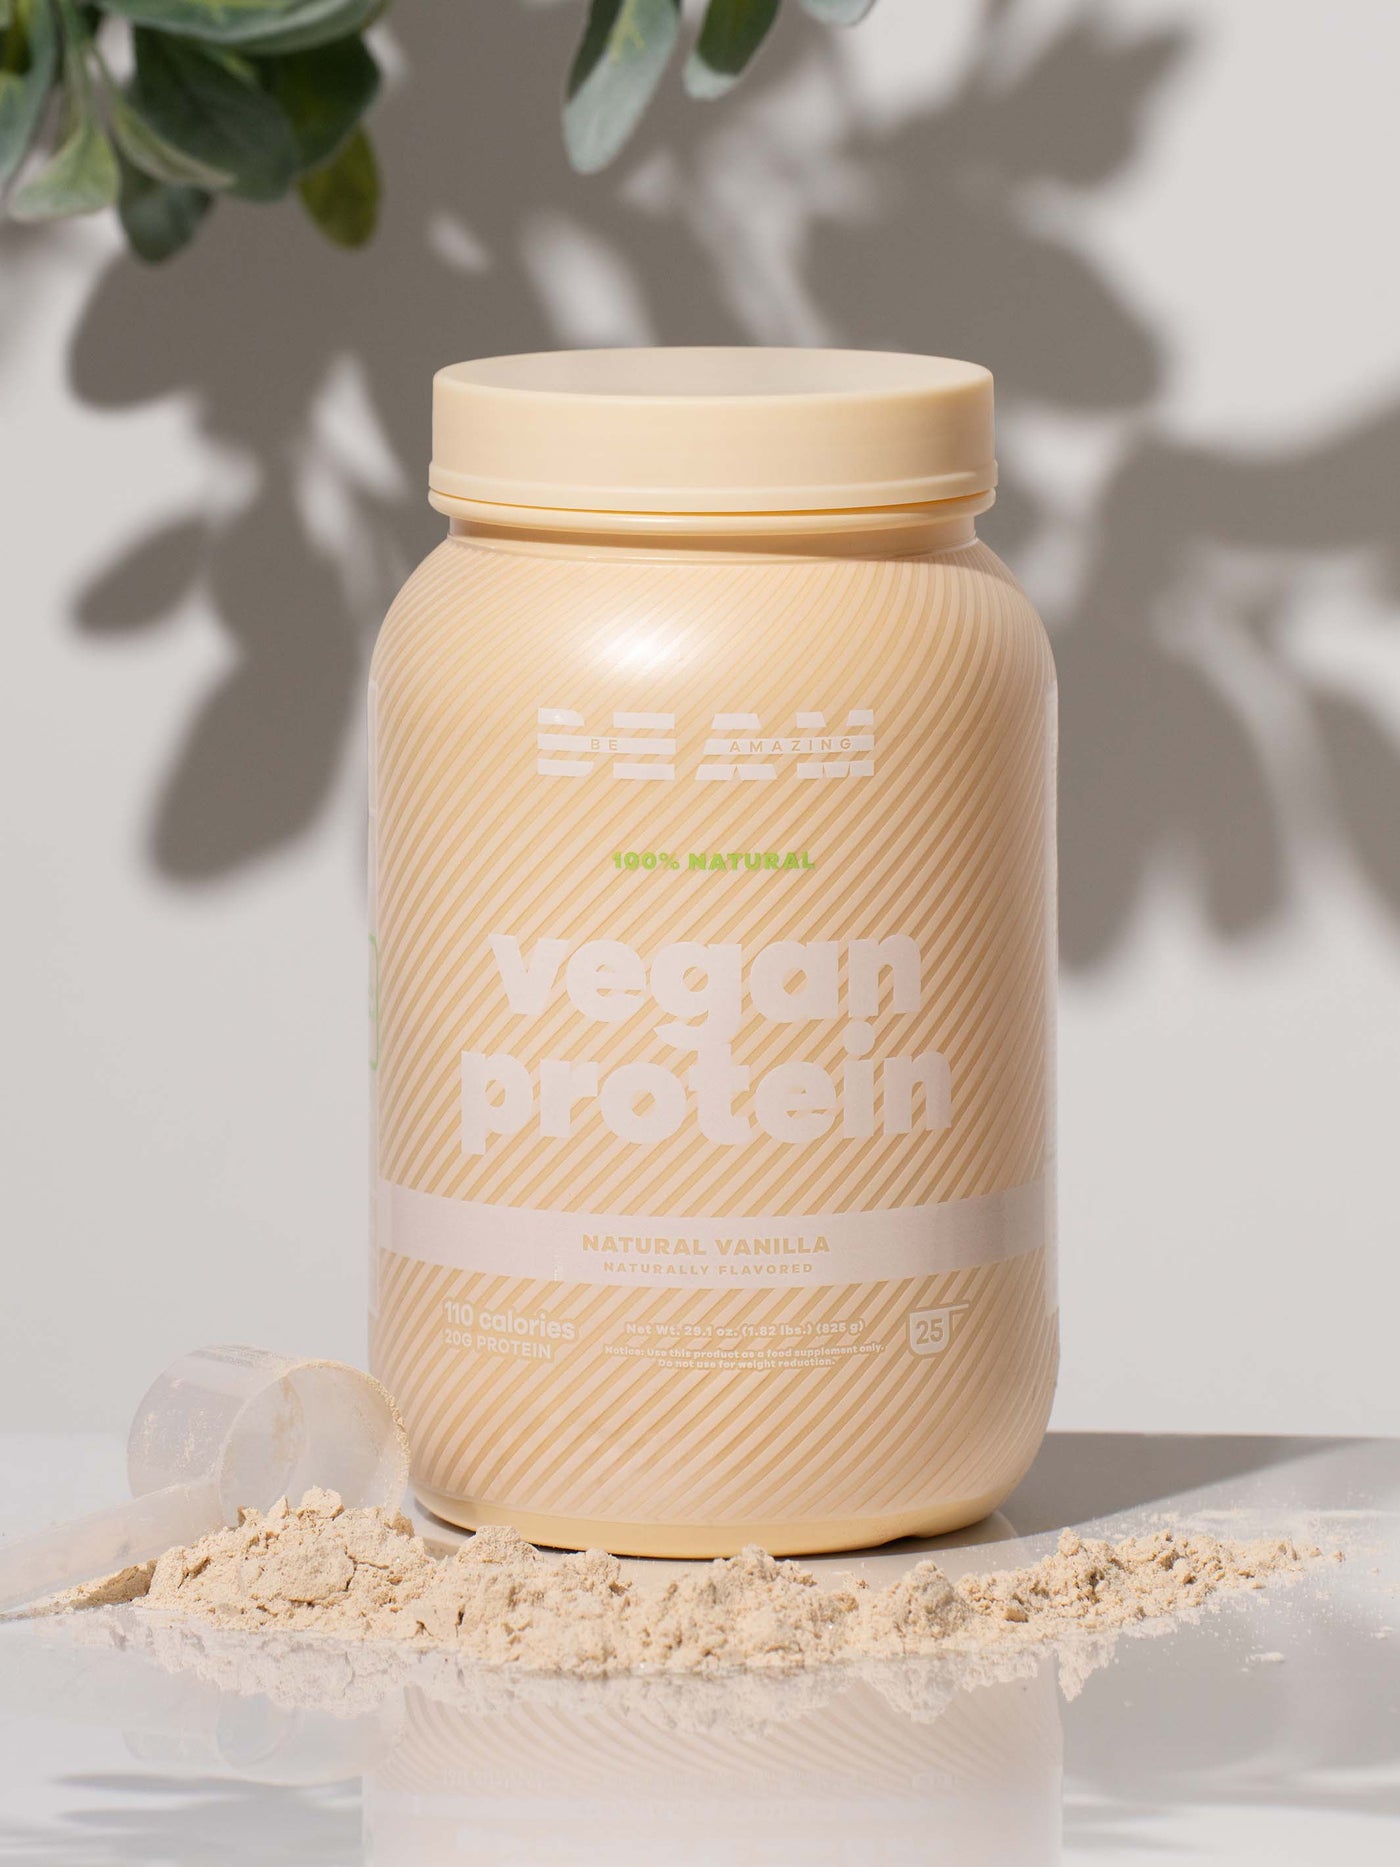 Natural Vanilla Vegan Protein alternative 2# 25 Servings / Natural Vanilla